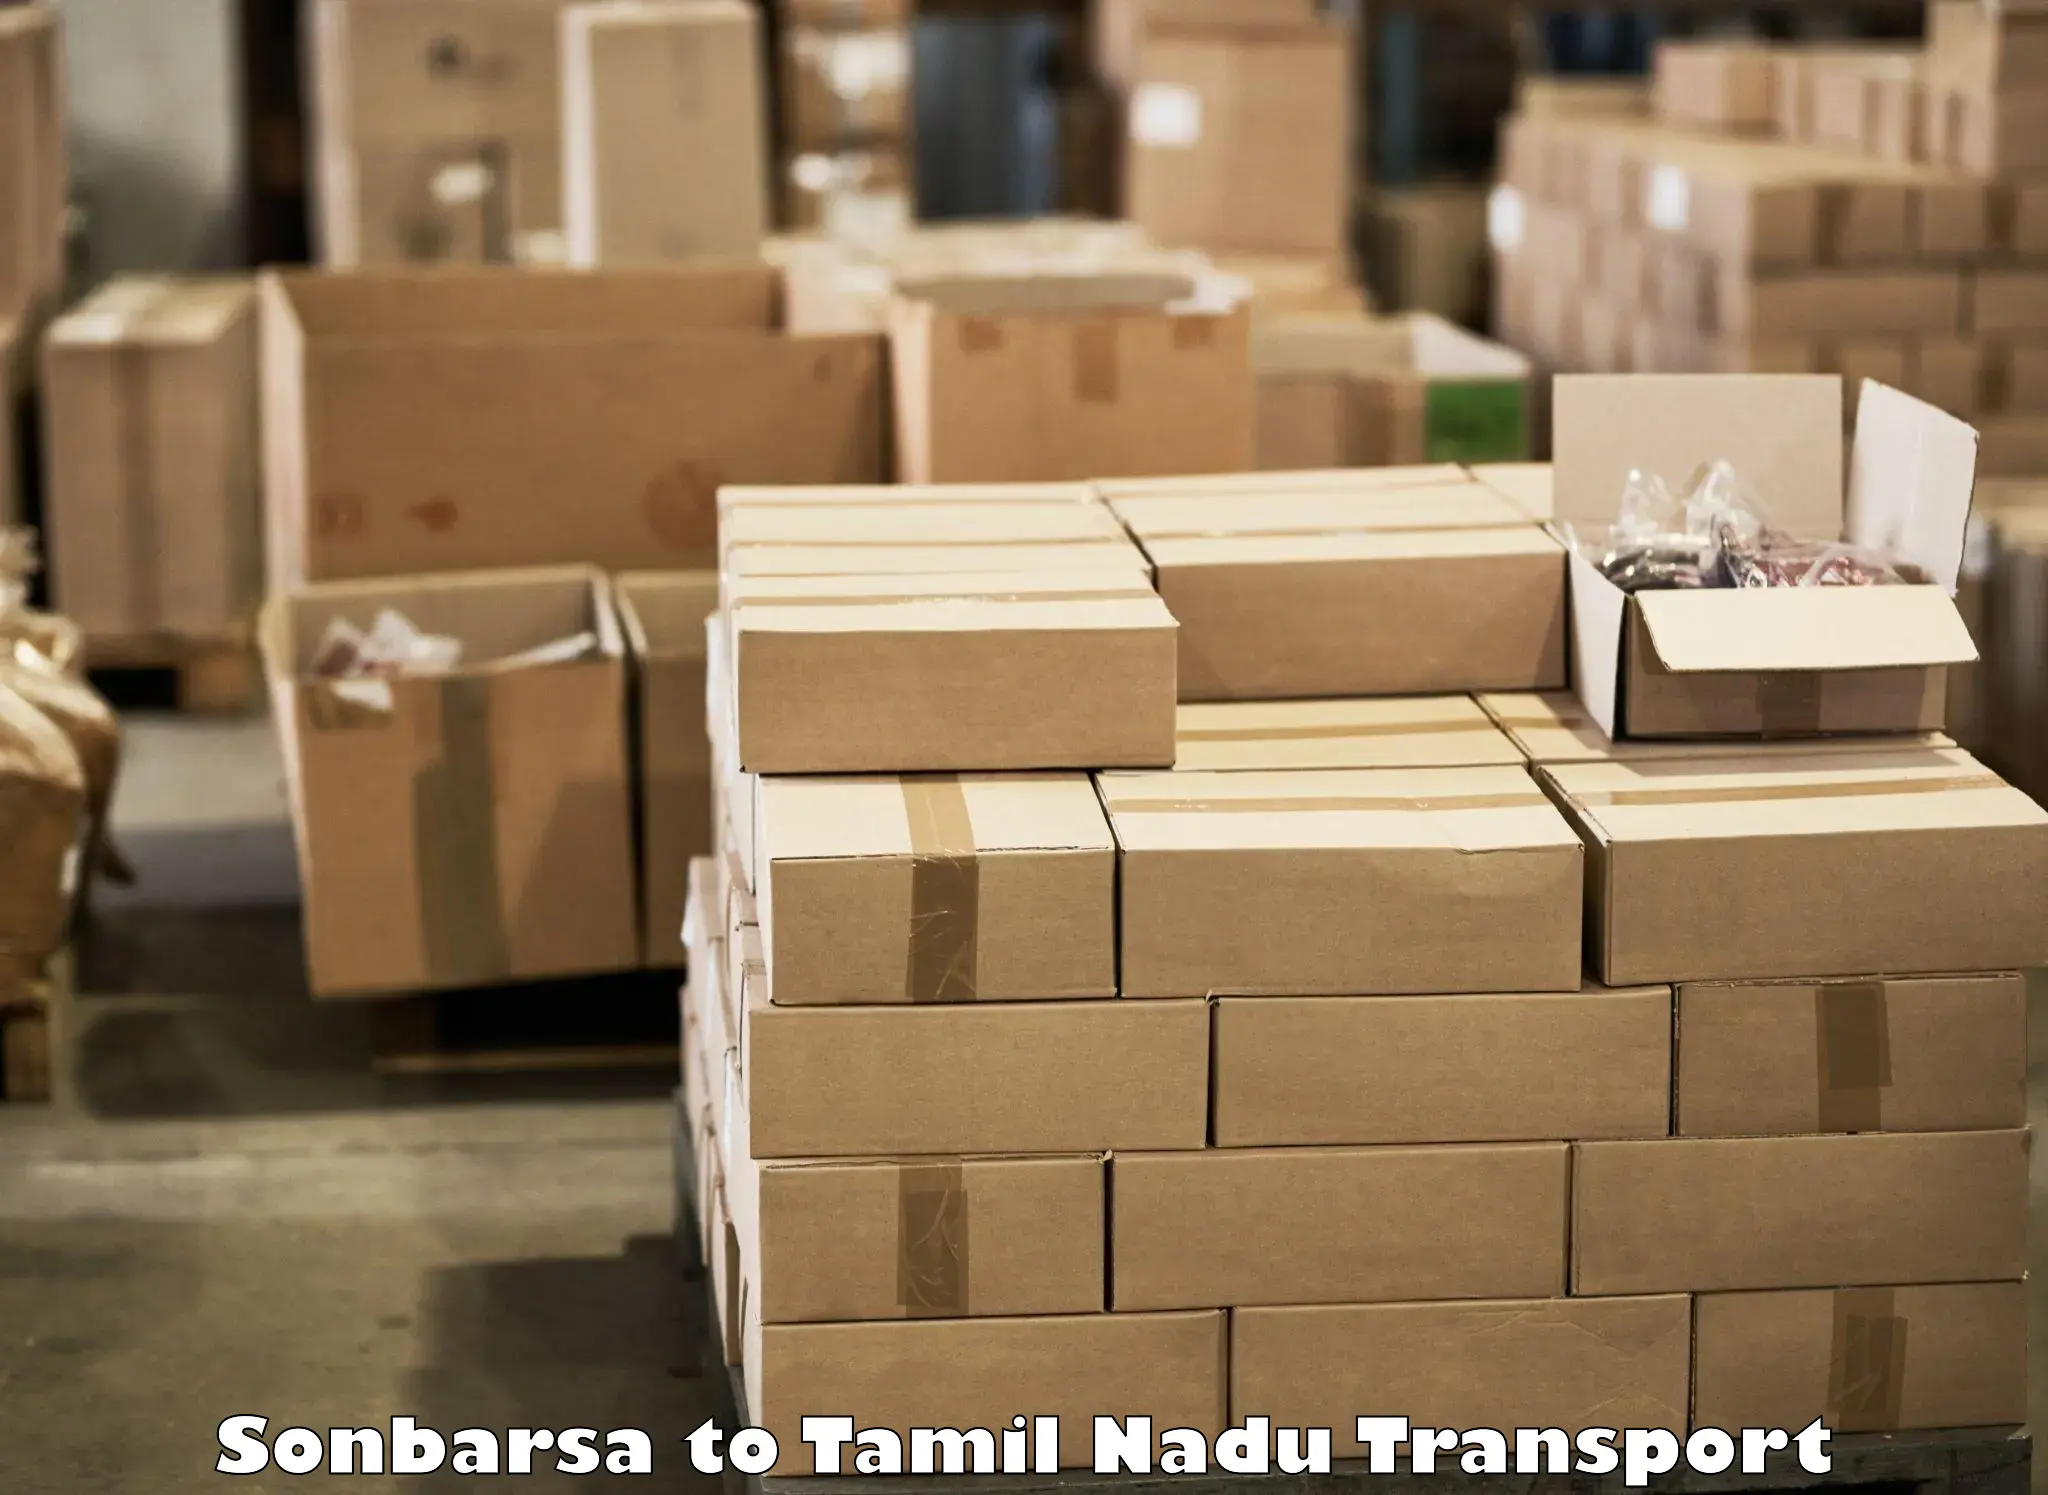 Transport shared services Sonbarsa to Tamil Nadu